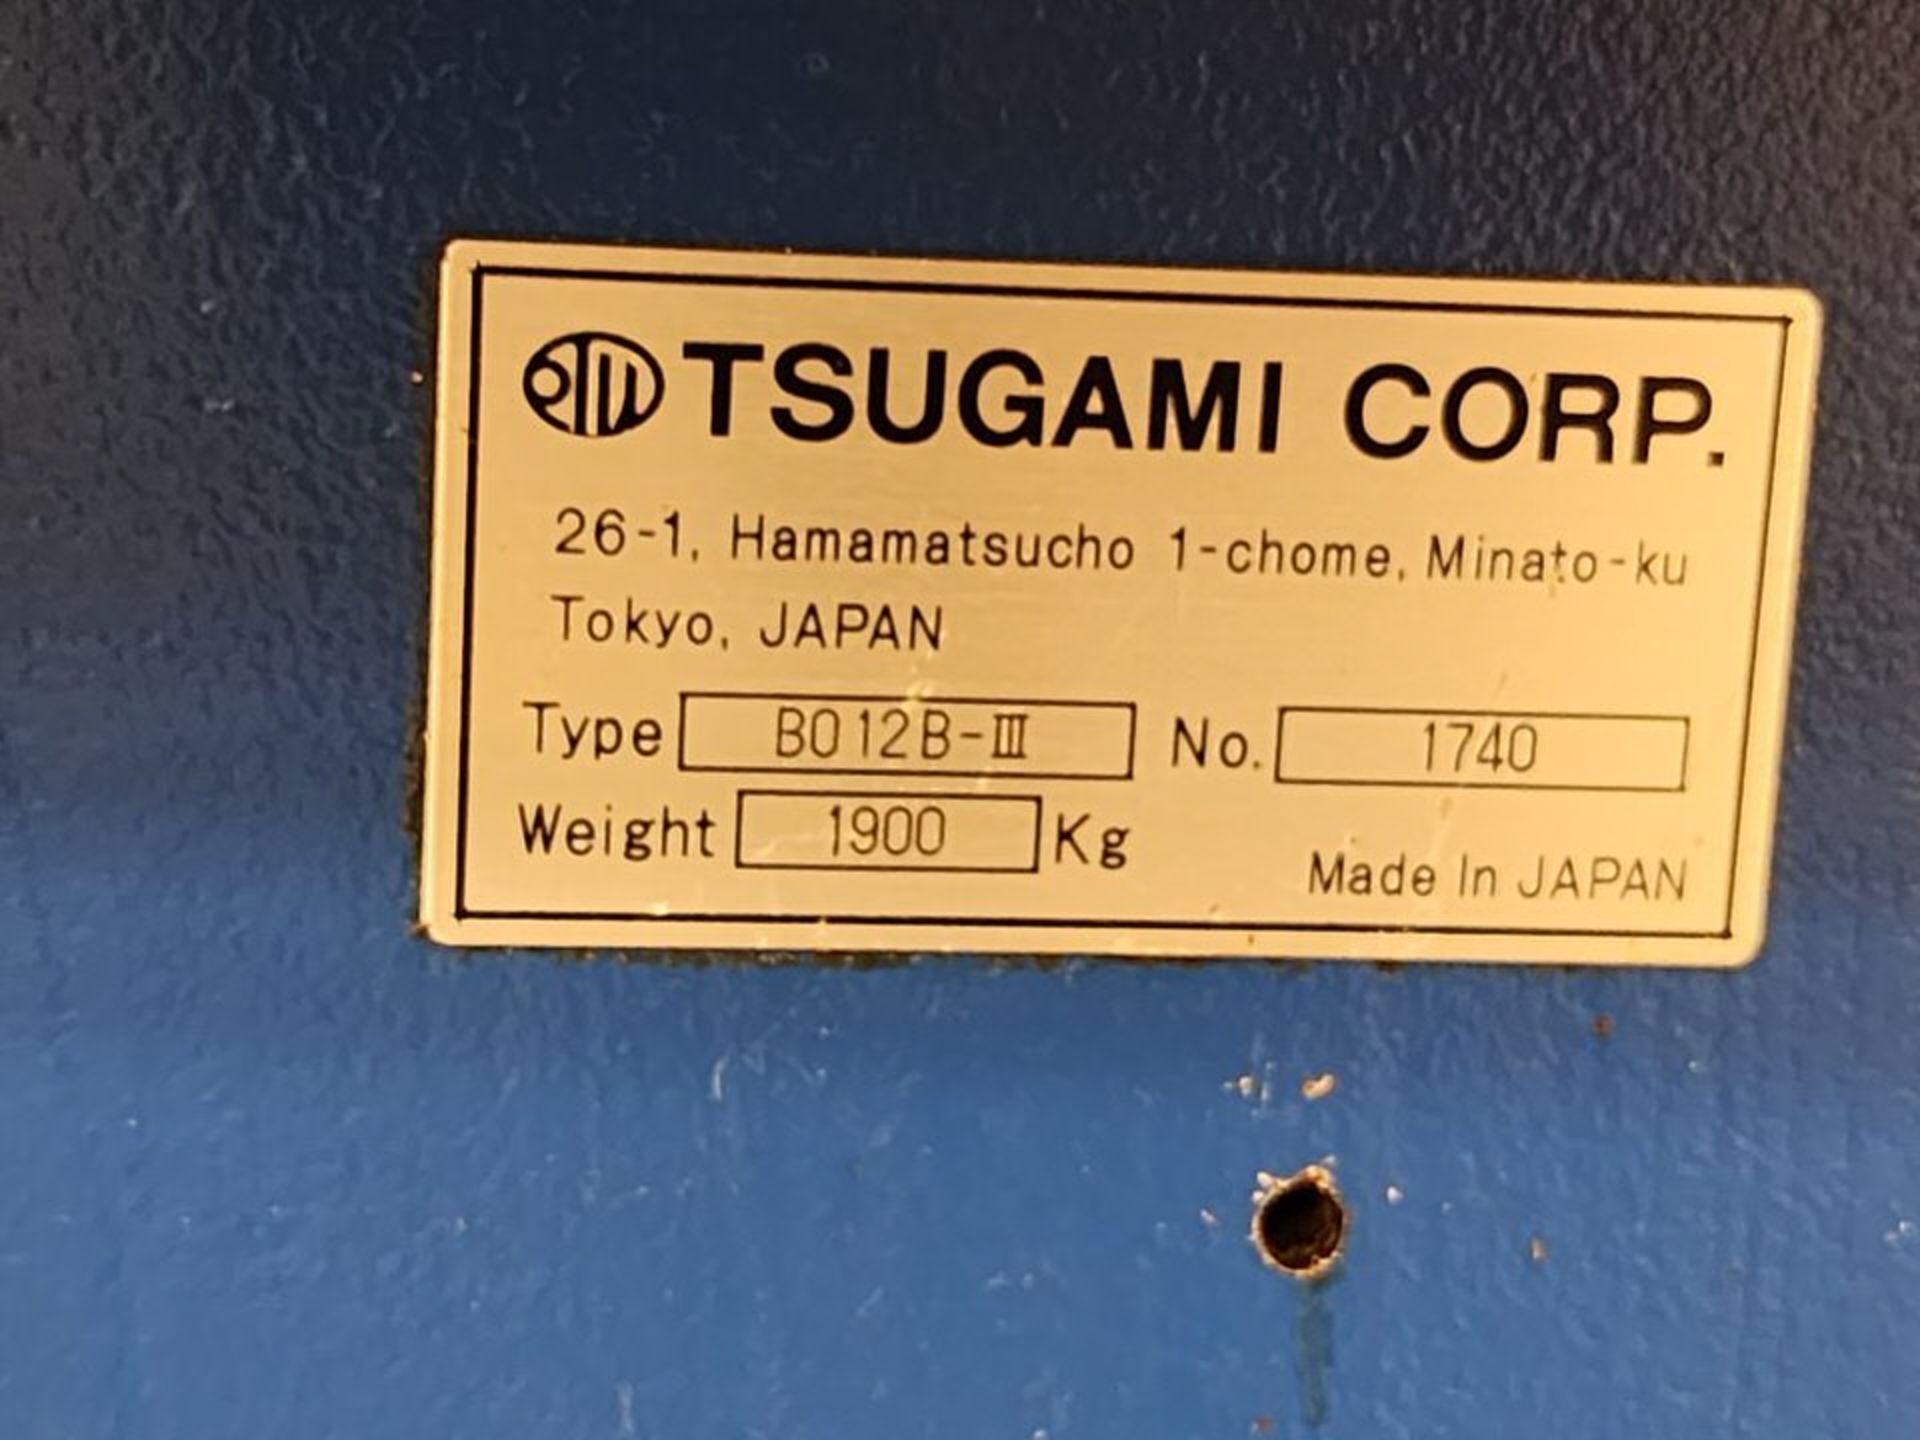 Tsugami B012B Swiss Lathe W/ Fanuc LG2 Controller; W/ LNS Bar Feeder: Yr: 09', Mod: 212ST - Image 17 of 29